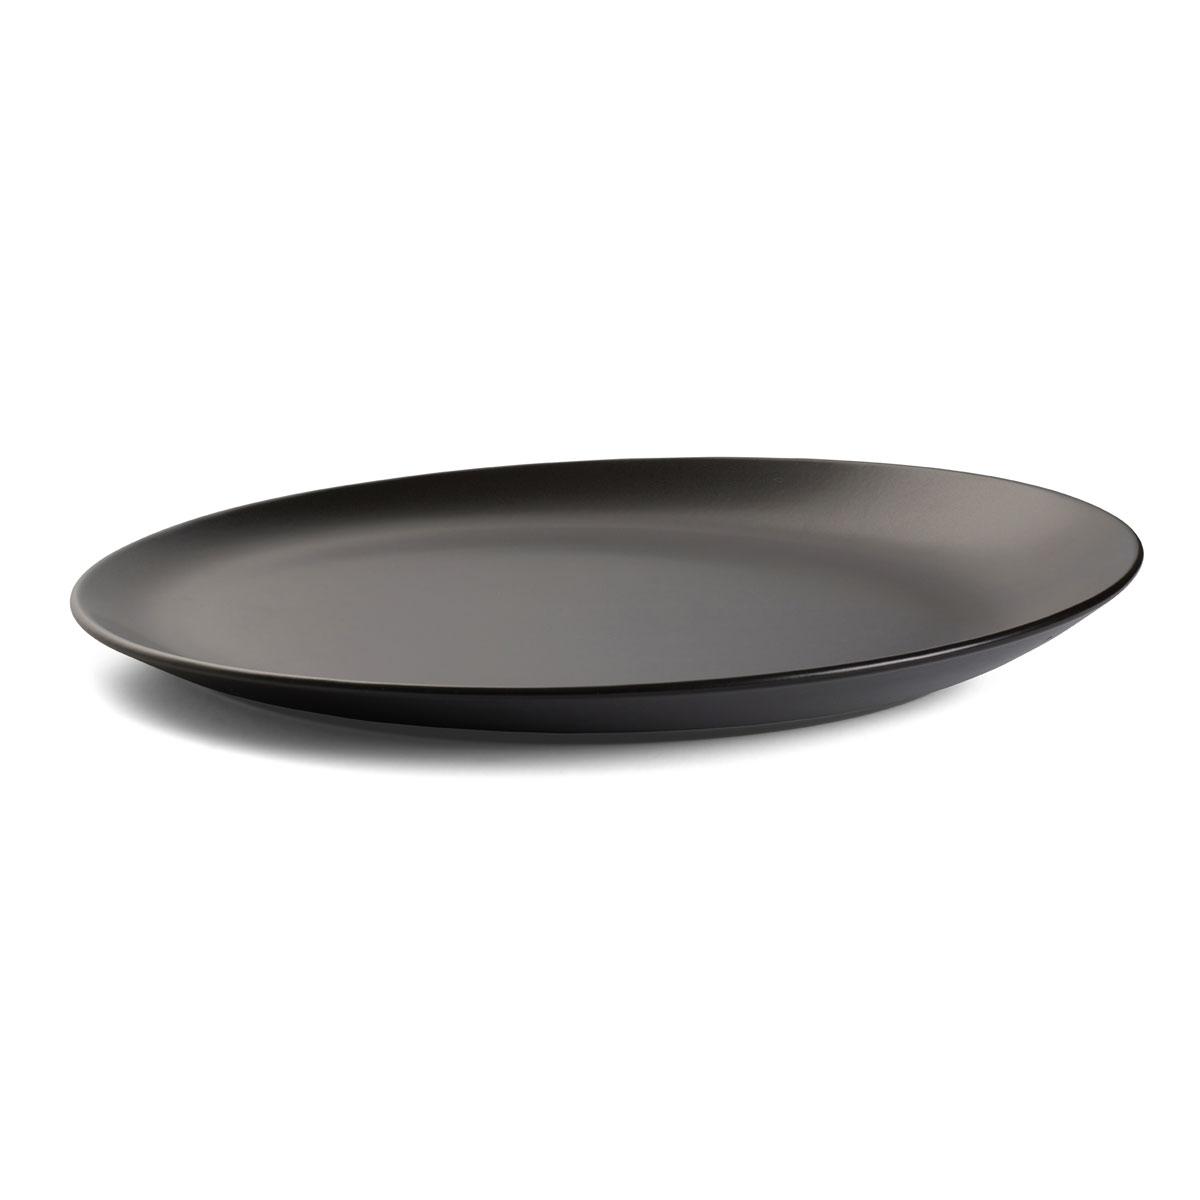 Nambe Celestial Black Orbit Platter